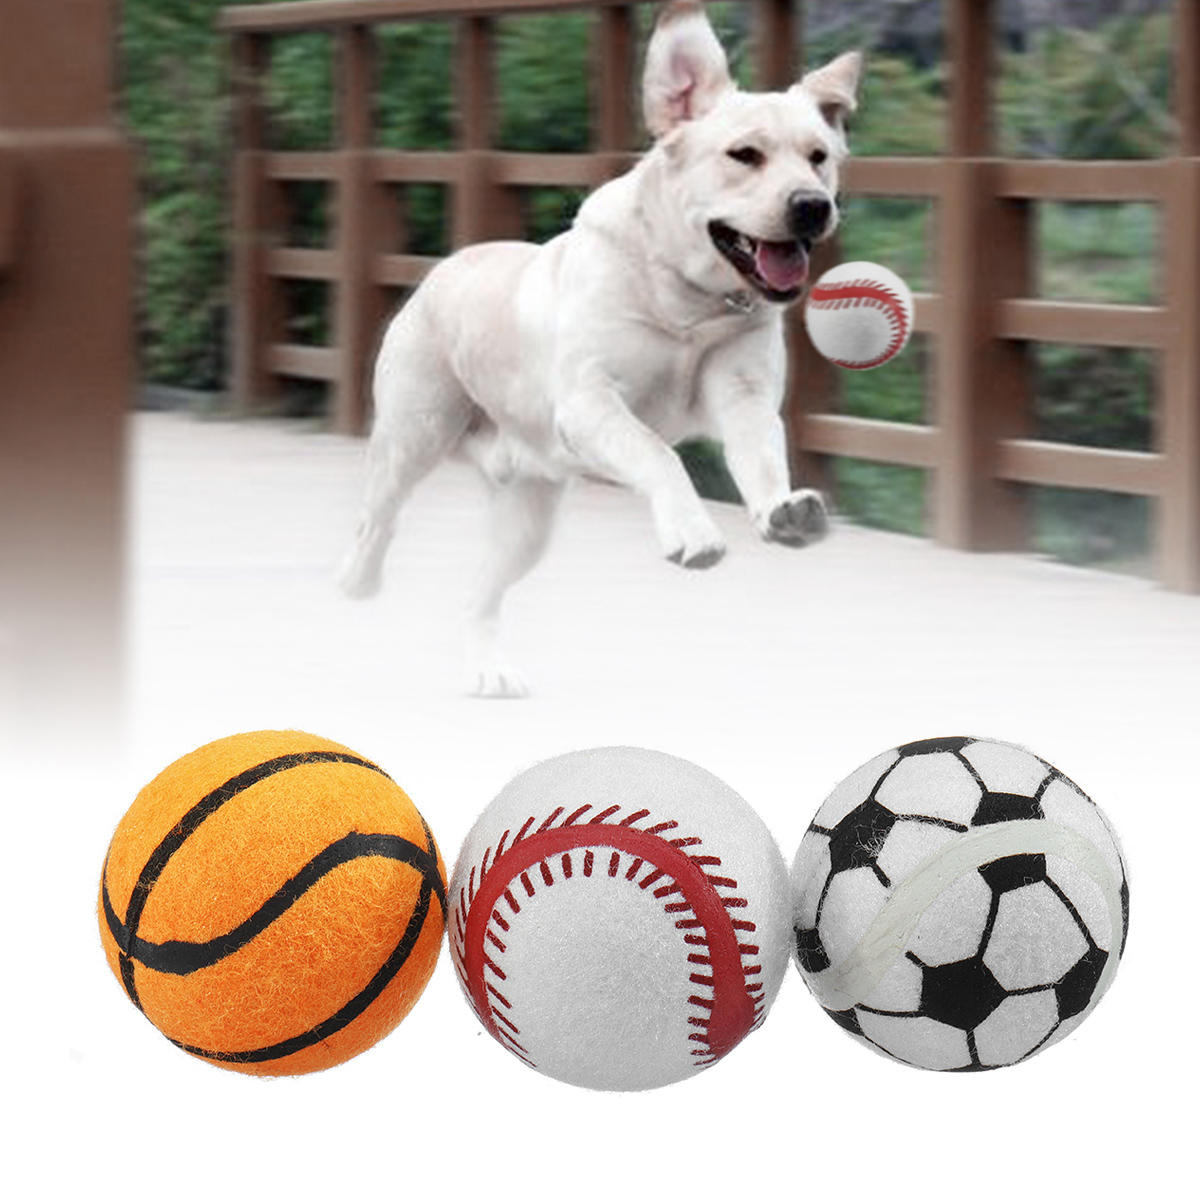 

3PCS Puppy Pet Собака Теннисный мяч Игрушки Fetch Thrower Ролик Играть в игру Hyper Training